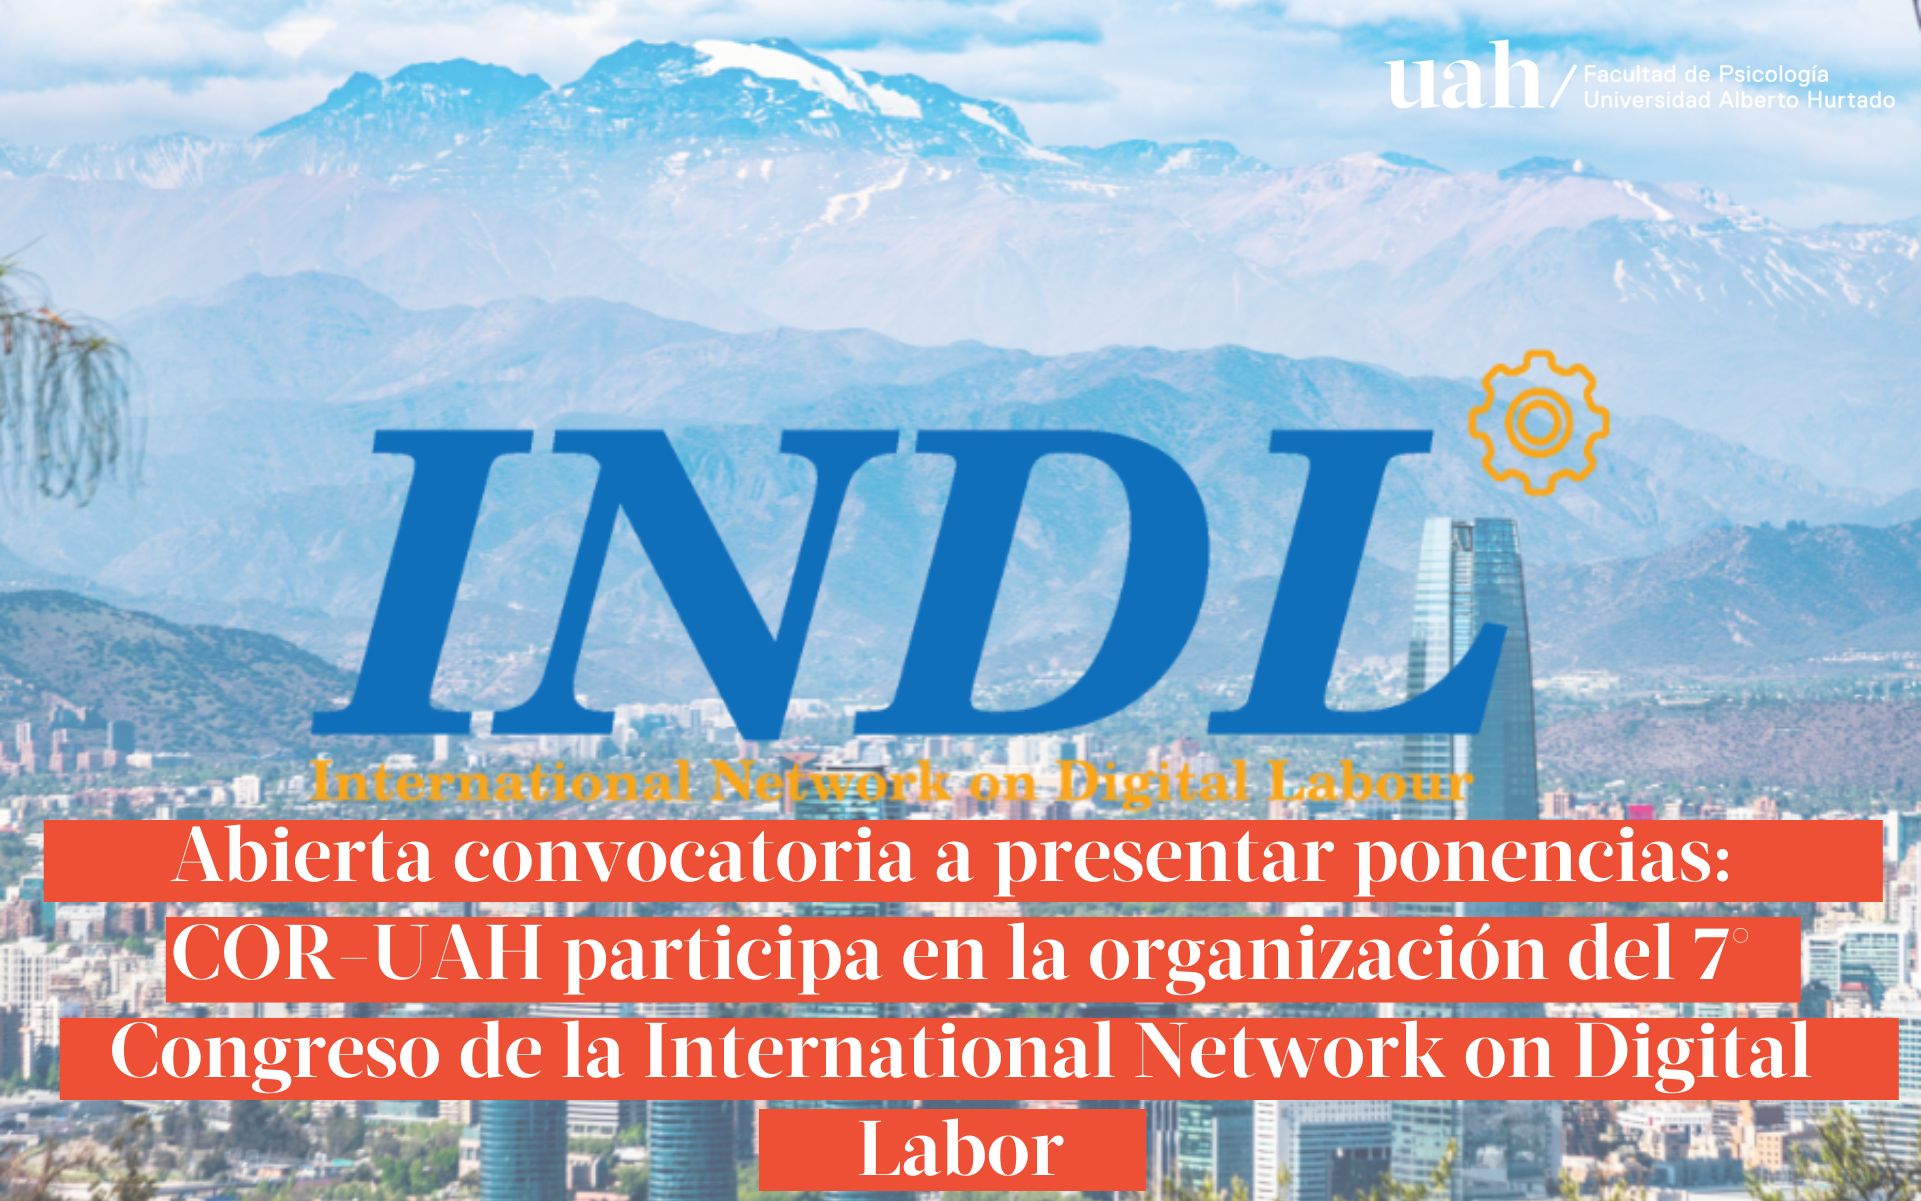 Abierta convocatoria a presentar ponencias: COR-UAH participa en la organización del 7° Congreso de la International Network on Digital Labor